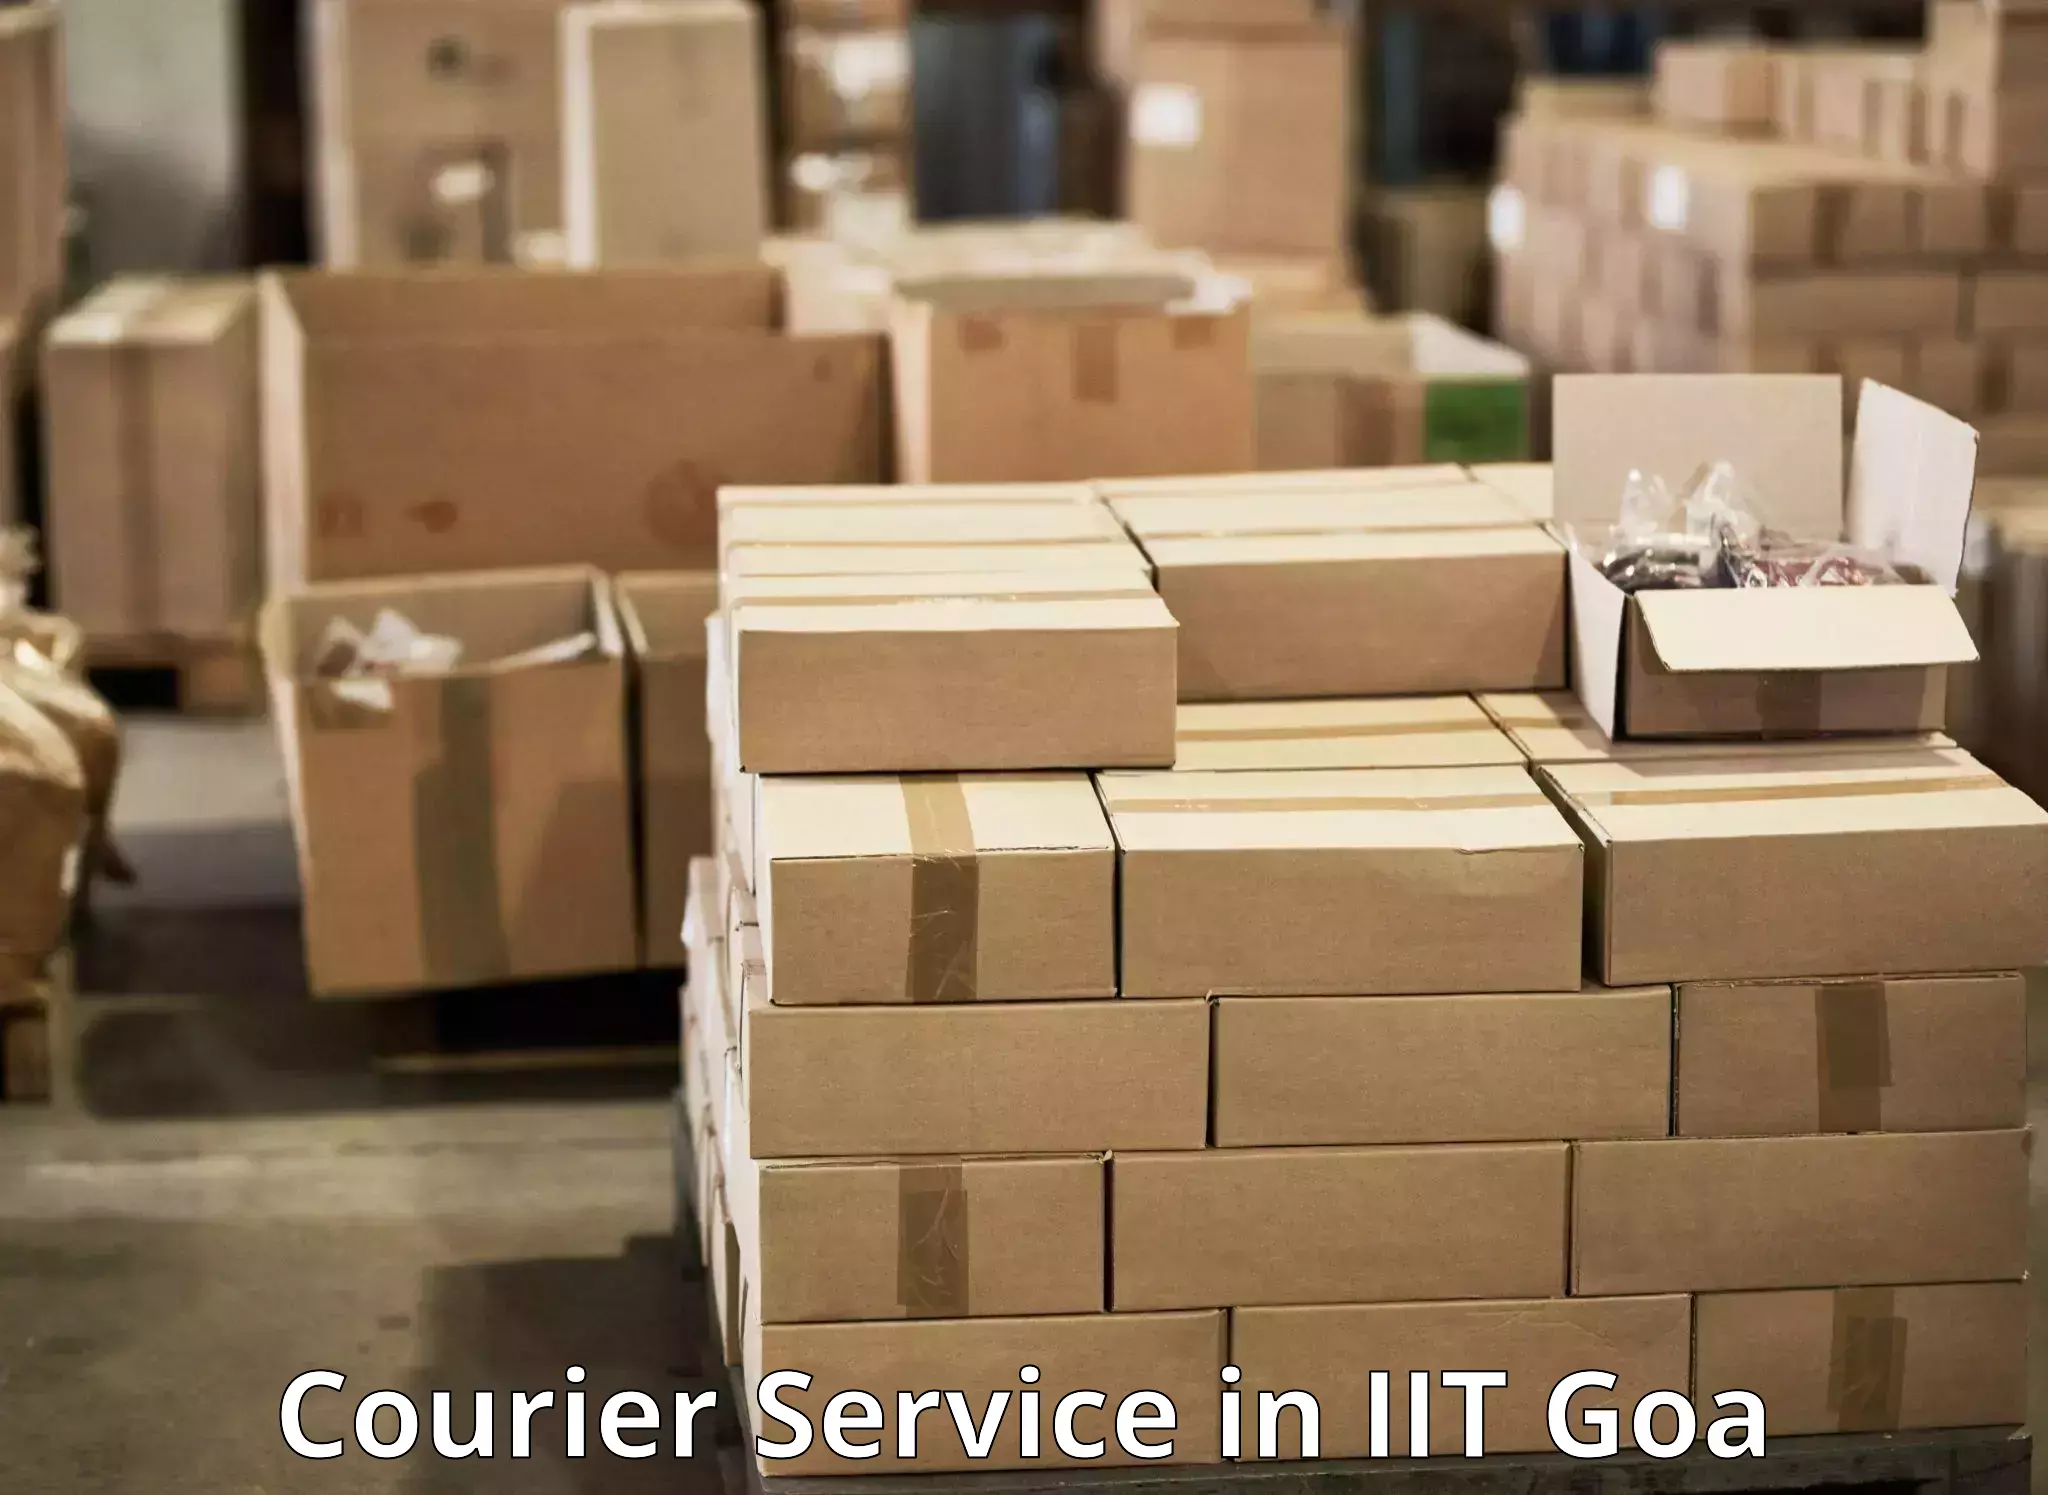 Door-to-door shipment in IIT Goa